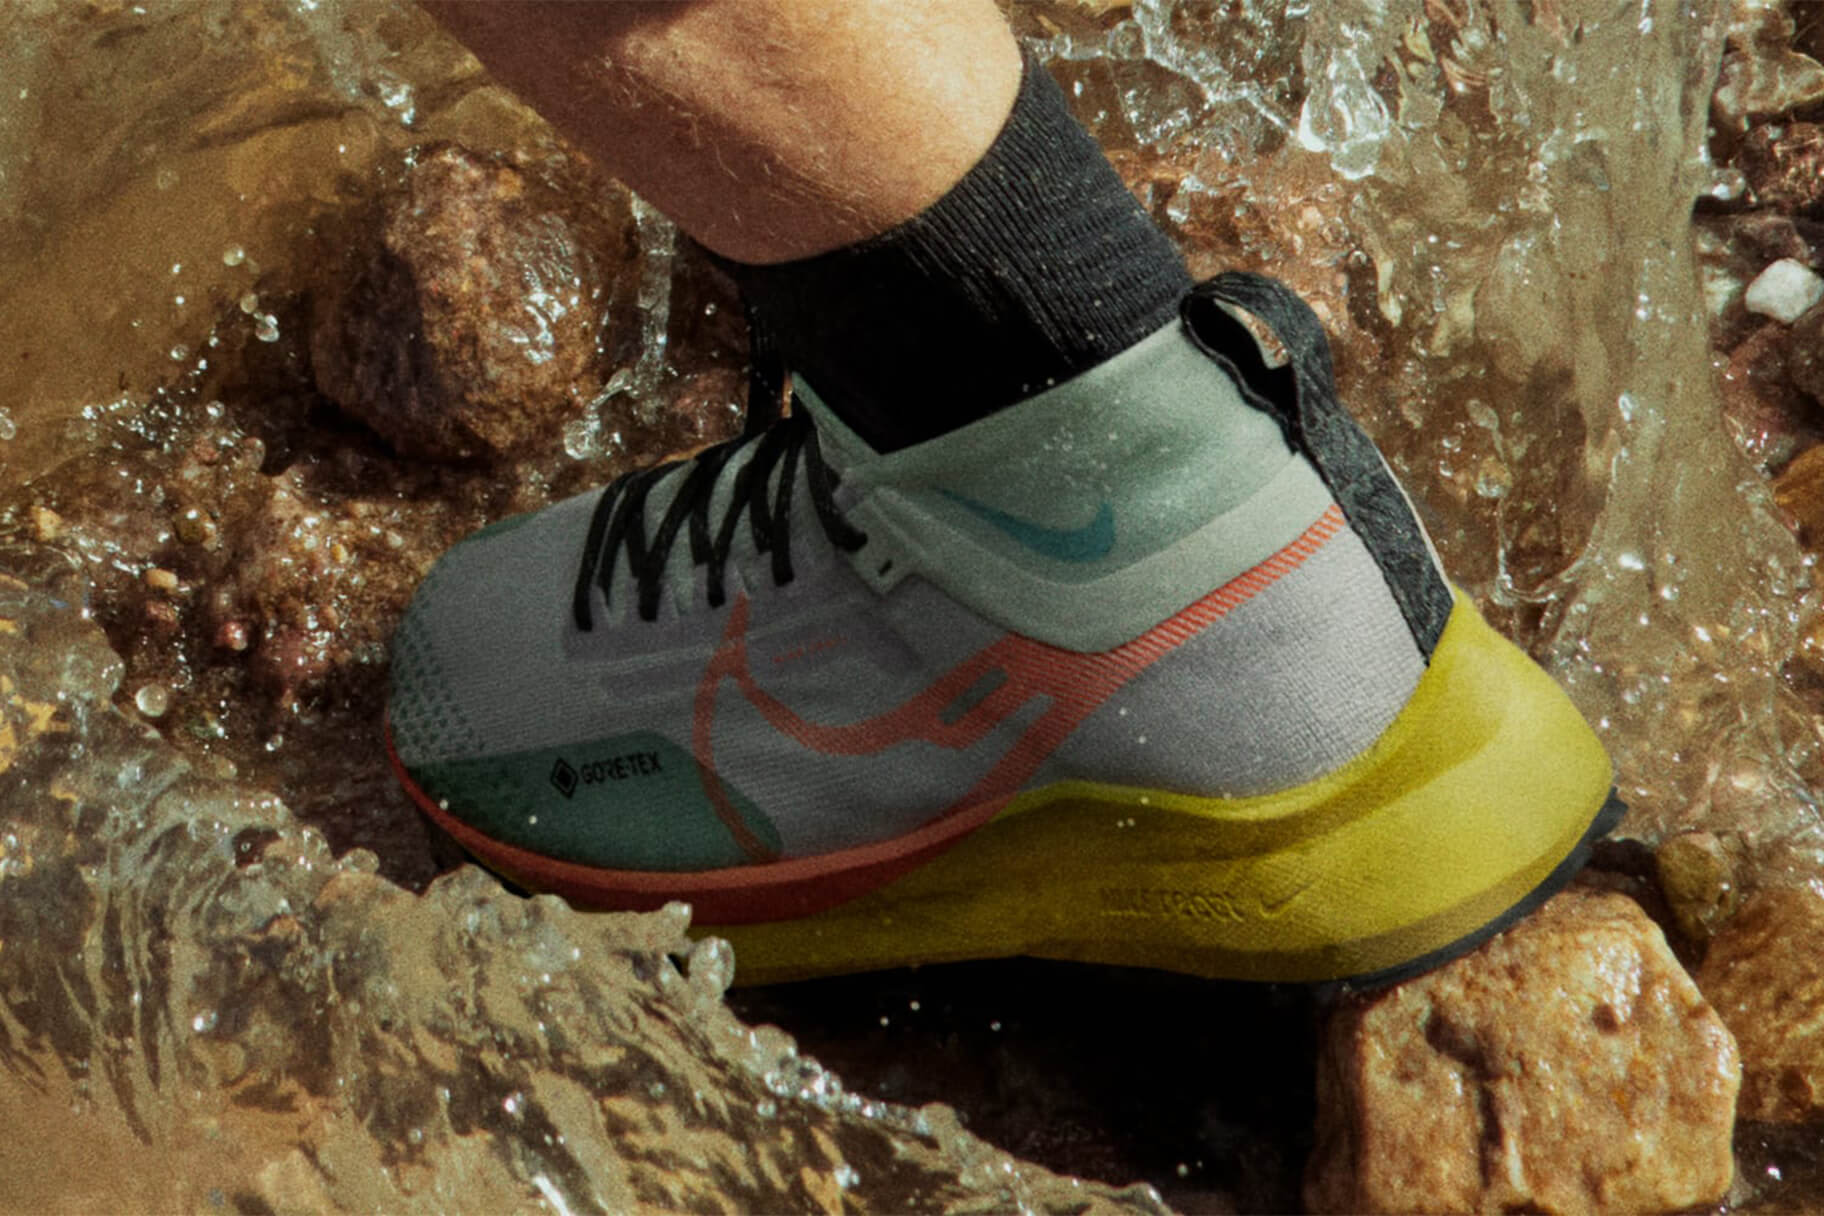 Scarpe impermeabili Nike Running per allenarsi sotto la pioggia